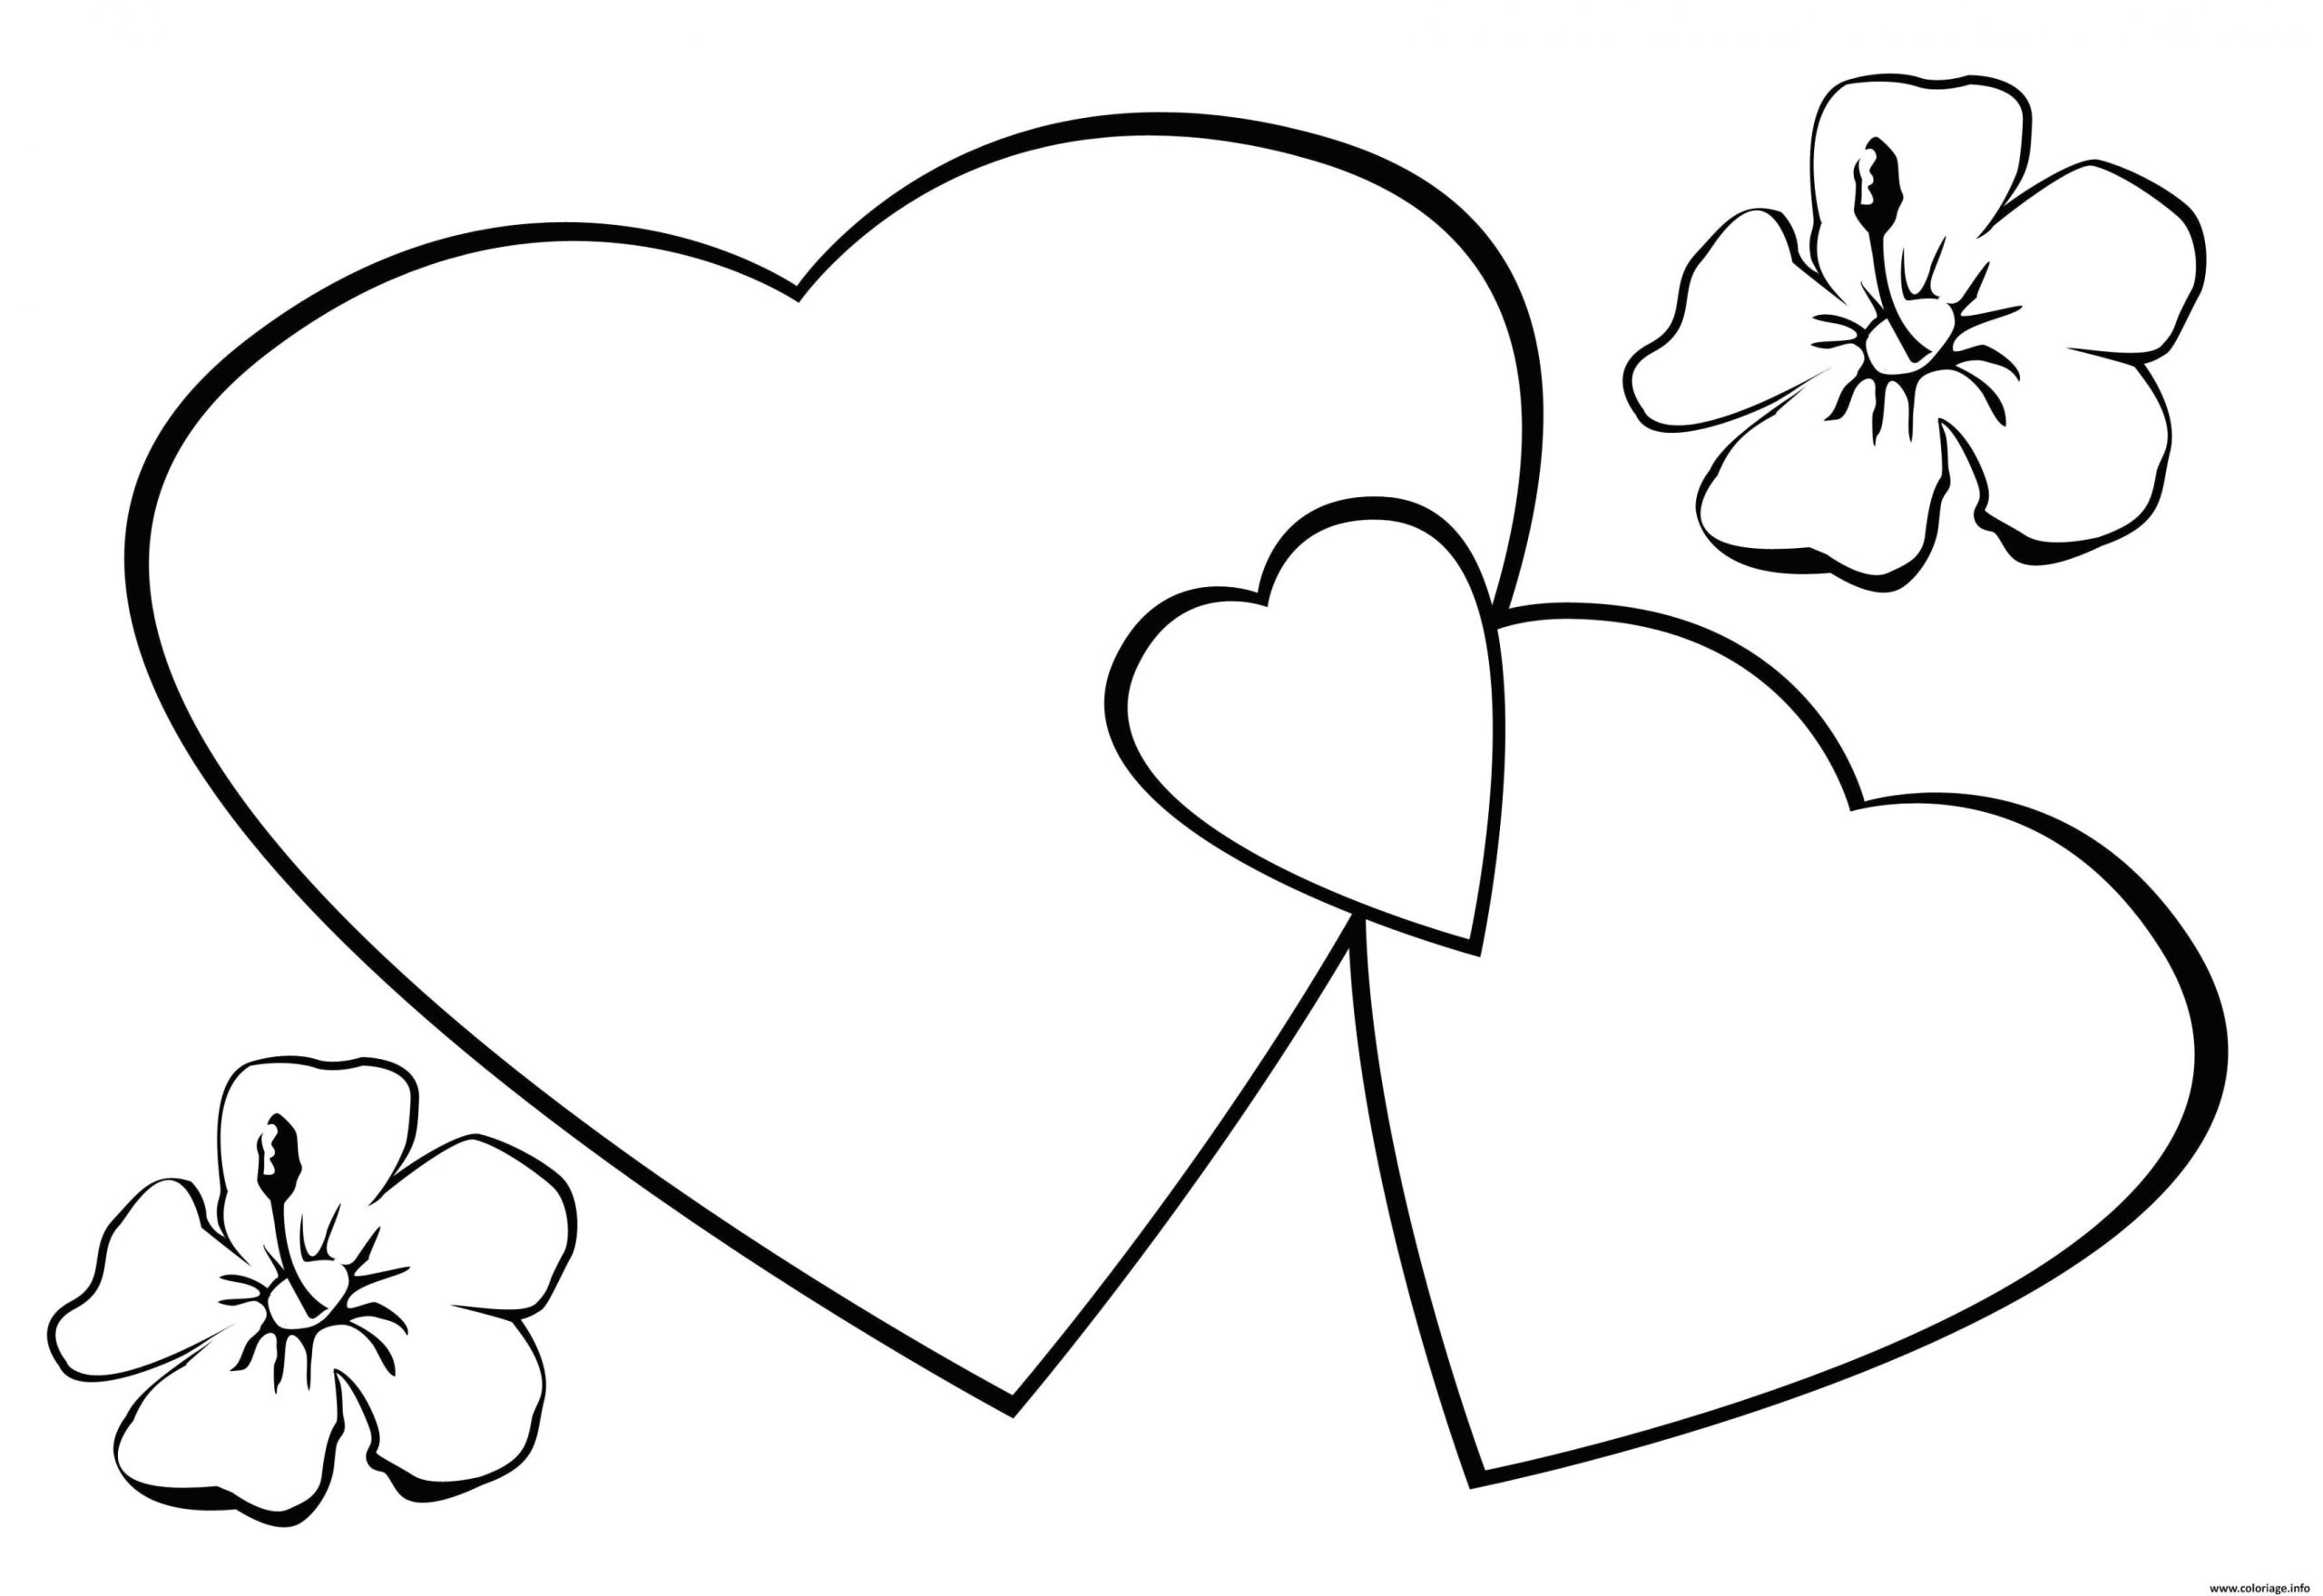 coloriage de coeur d amour a imprimer 22 top dessin de coeur d amour regarding coloriage coeur amour